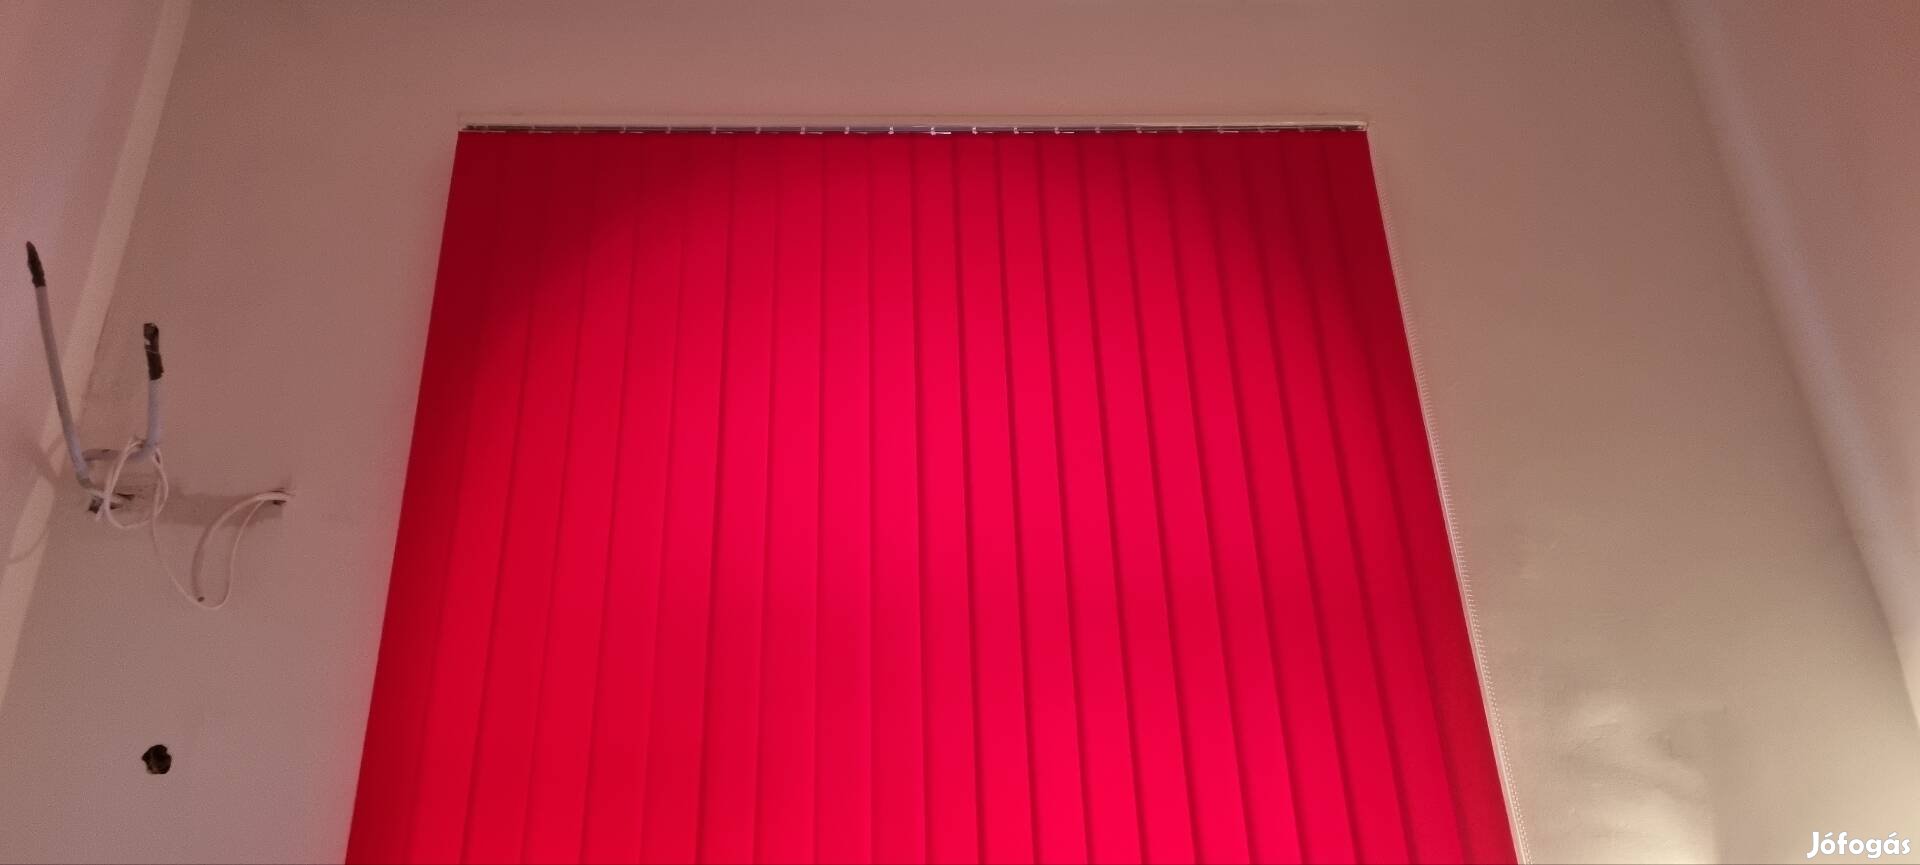 Piros szalagfüggöny eladó 200 x 250